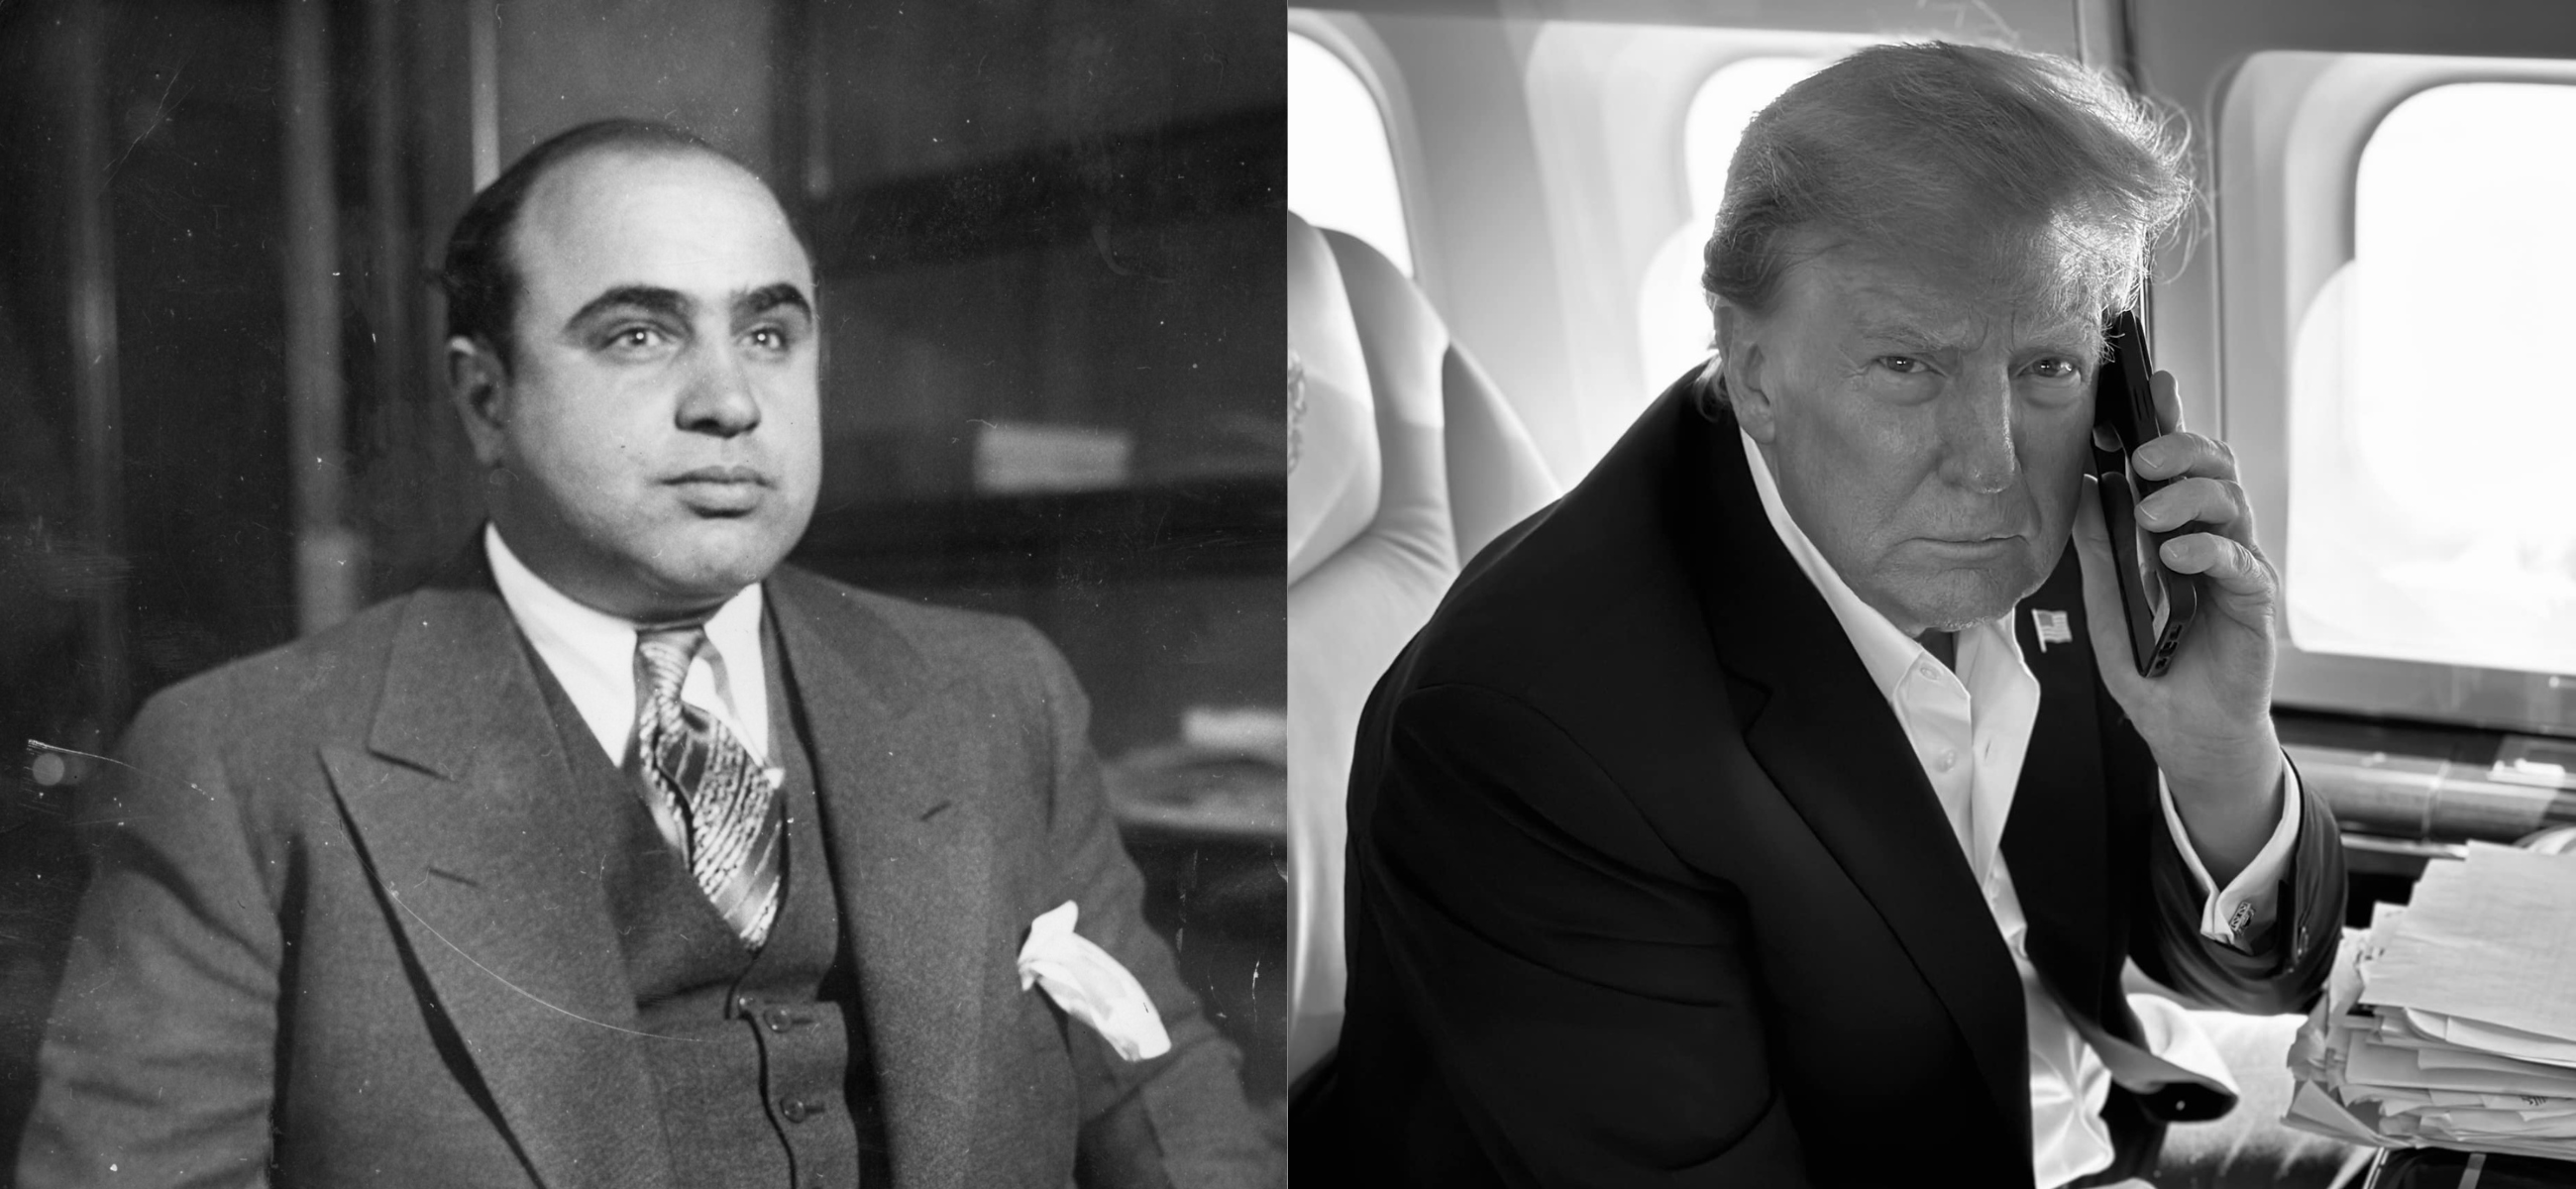 Al Capone and Donald Trump